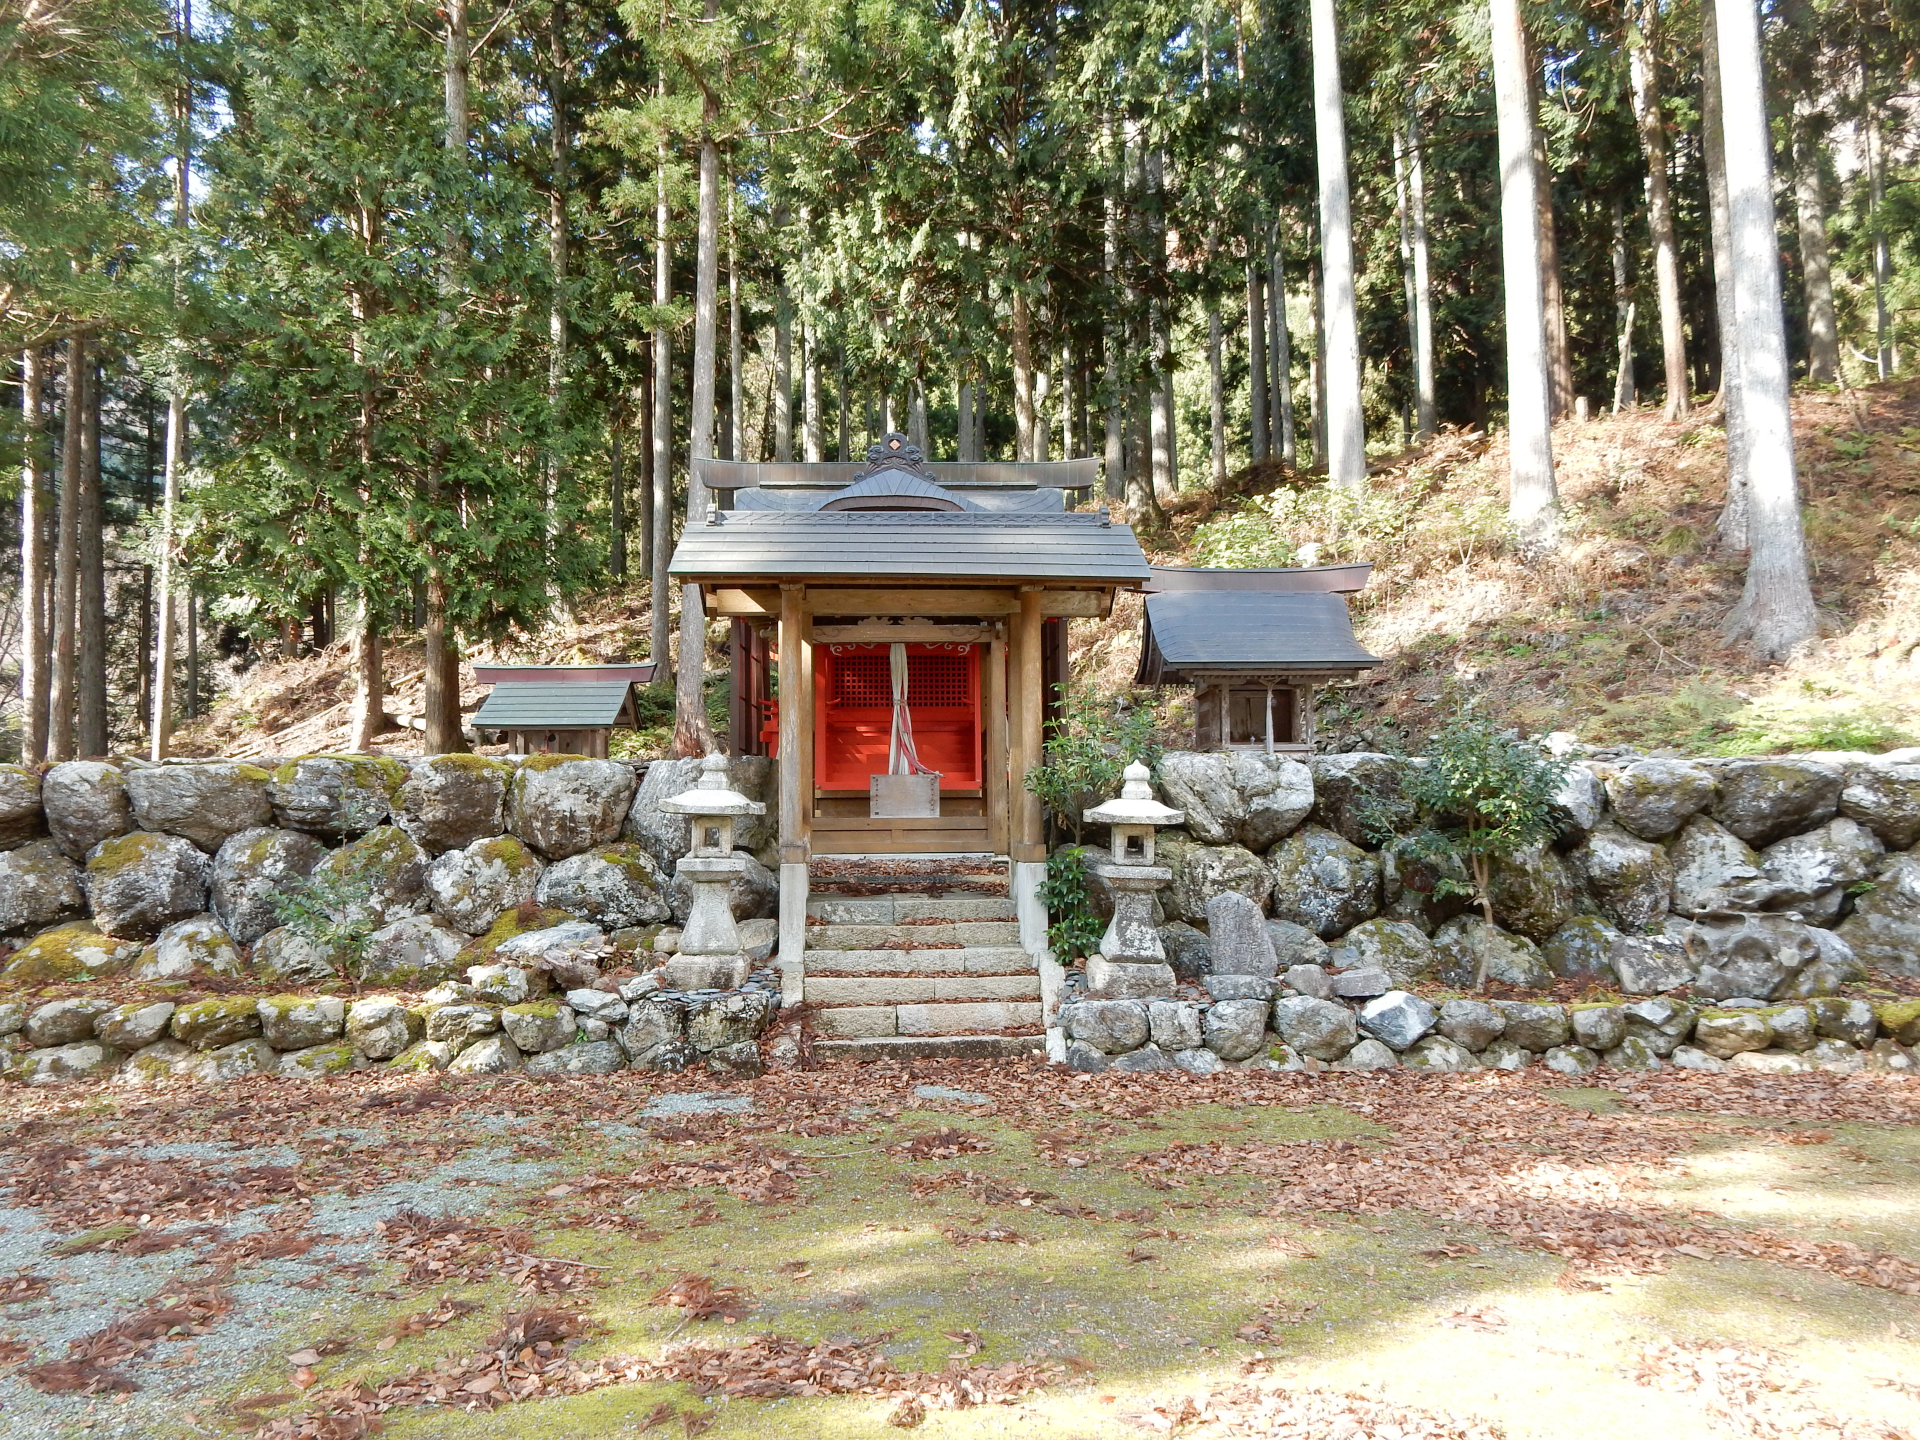 村井八幡神社